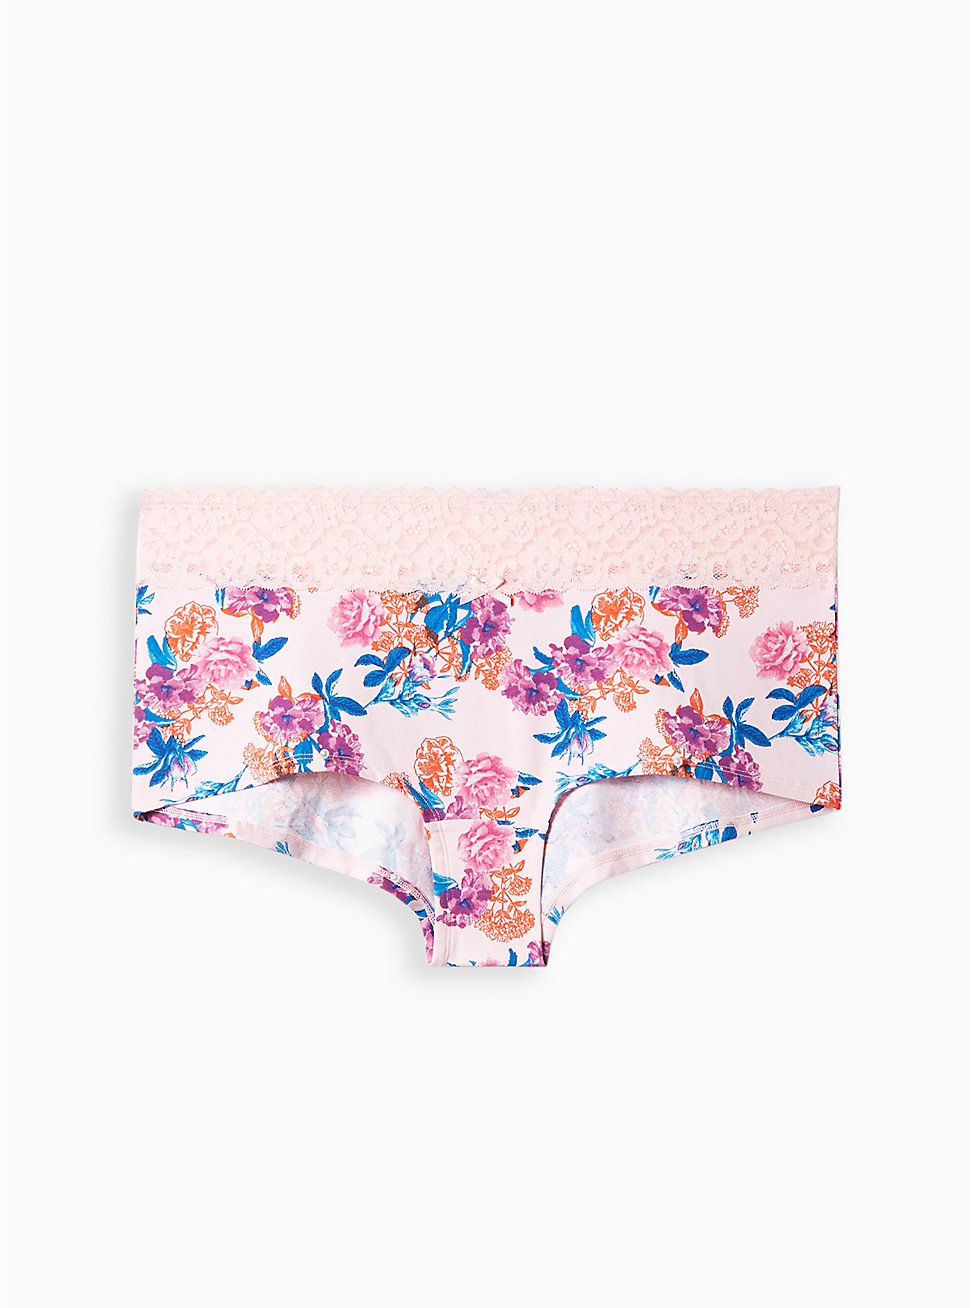 Plus Size Wide Lace Boyshort Panty - Cotton Gouache Flowers Pink, PRETTY GARDEN PINK, hi-res